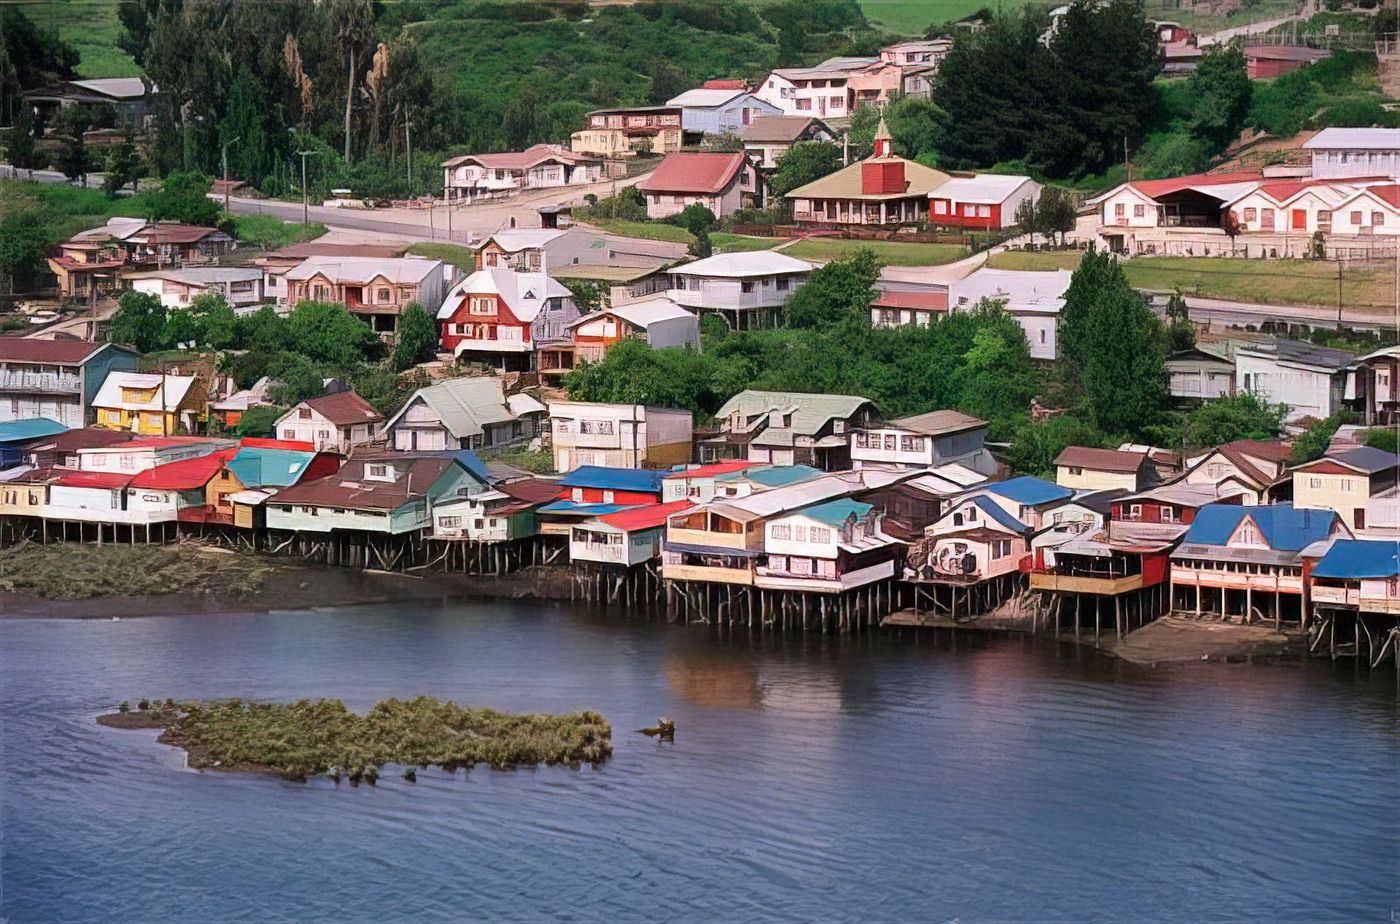 Isla de Chiloé (Île de Chiloé)